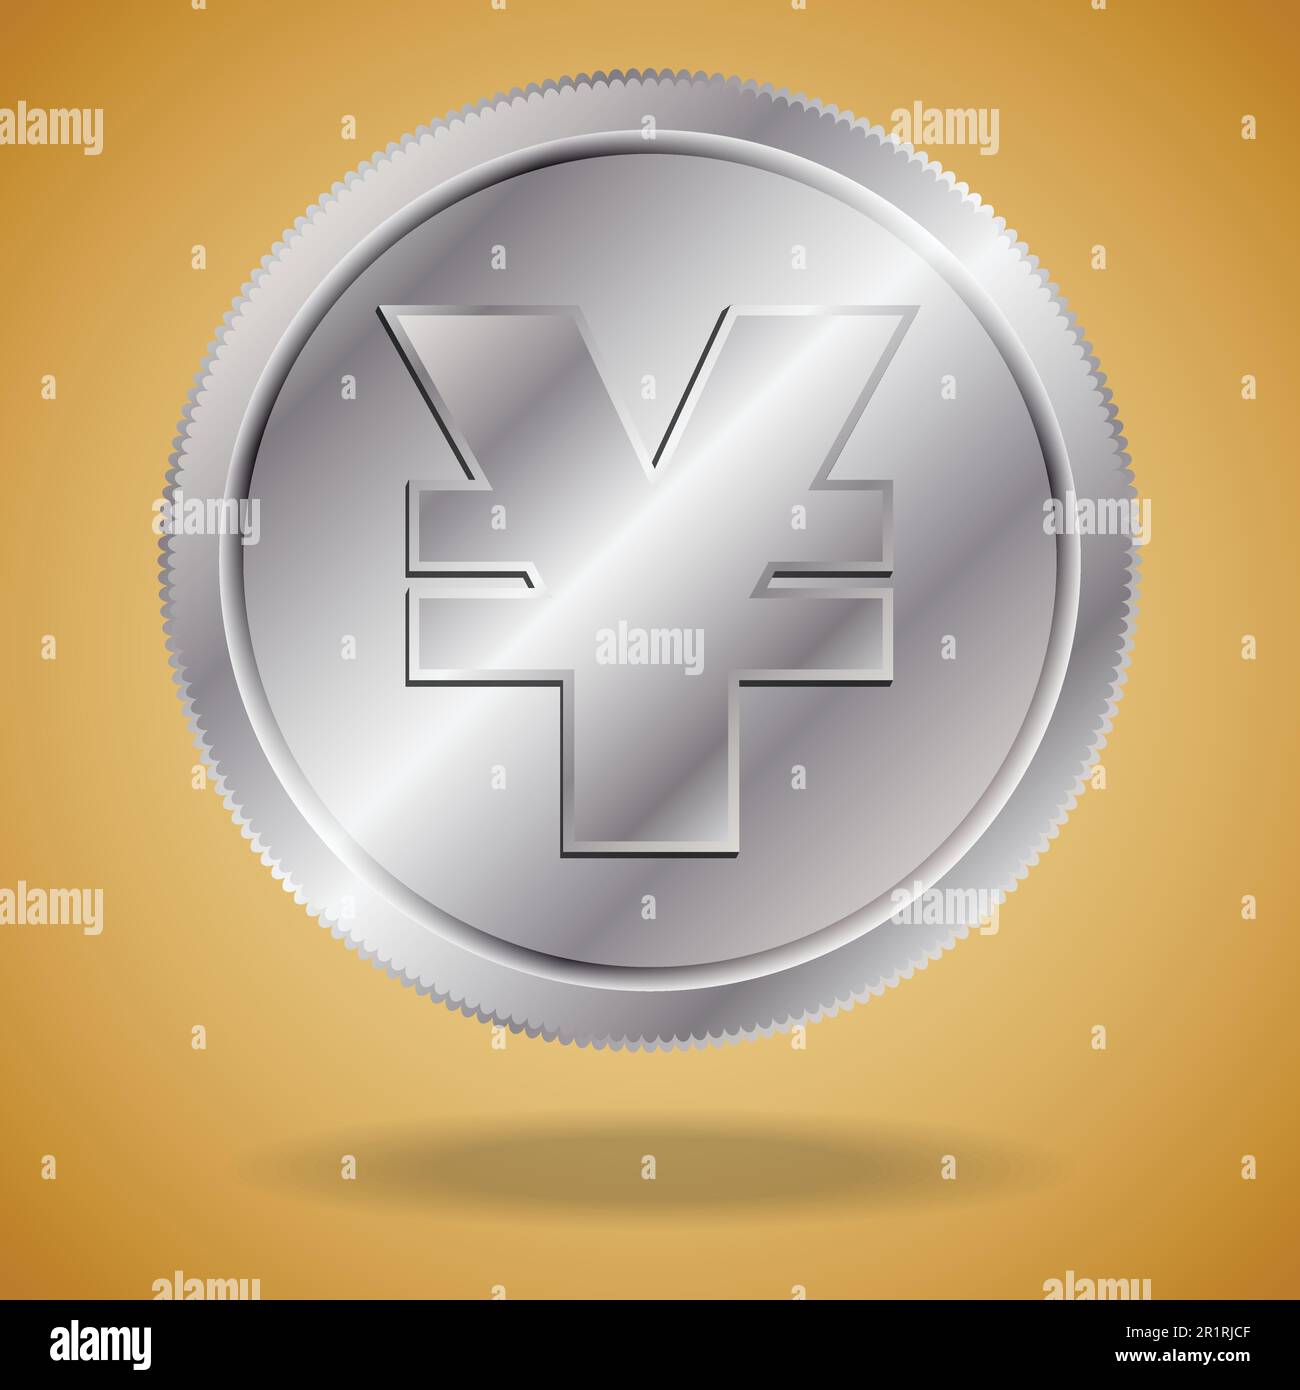 Modernes Konzept mit chinesischer Münze. Silberner chinesischer Yuan mit Schatten auf goldenem Hintergrund. Stock Vektor